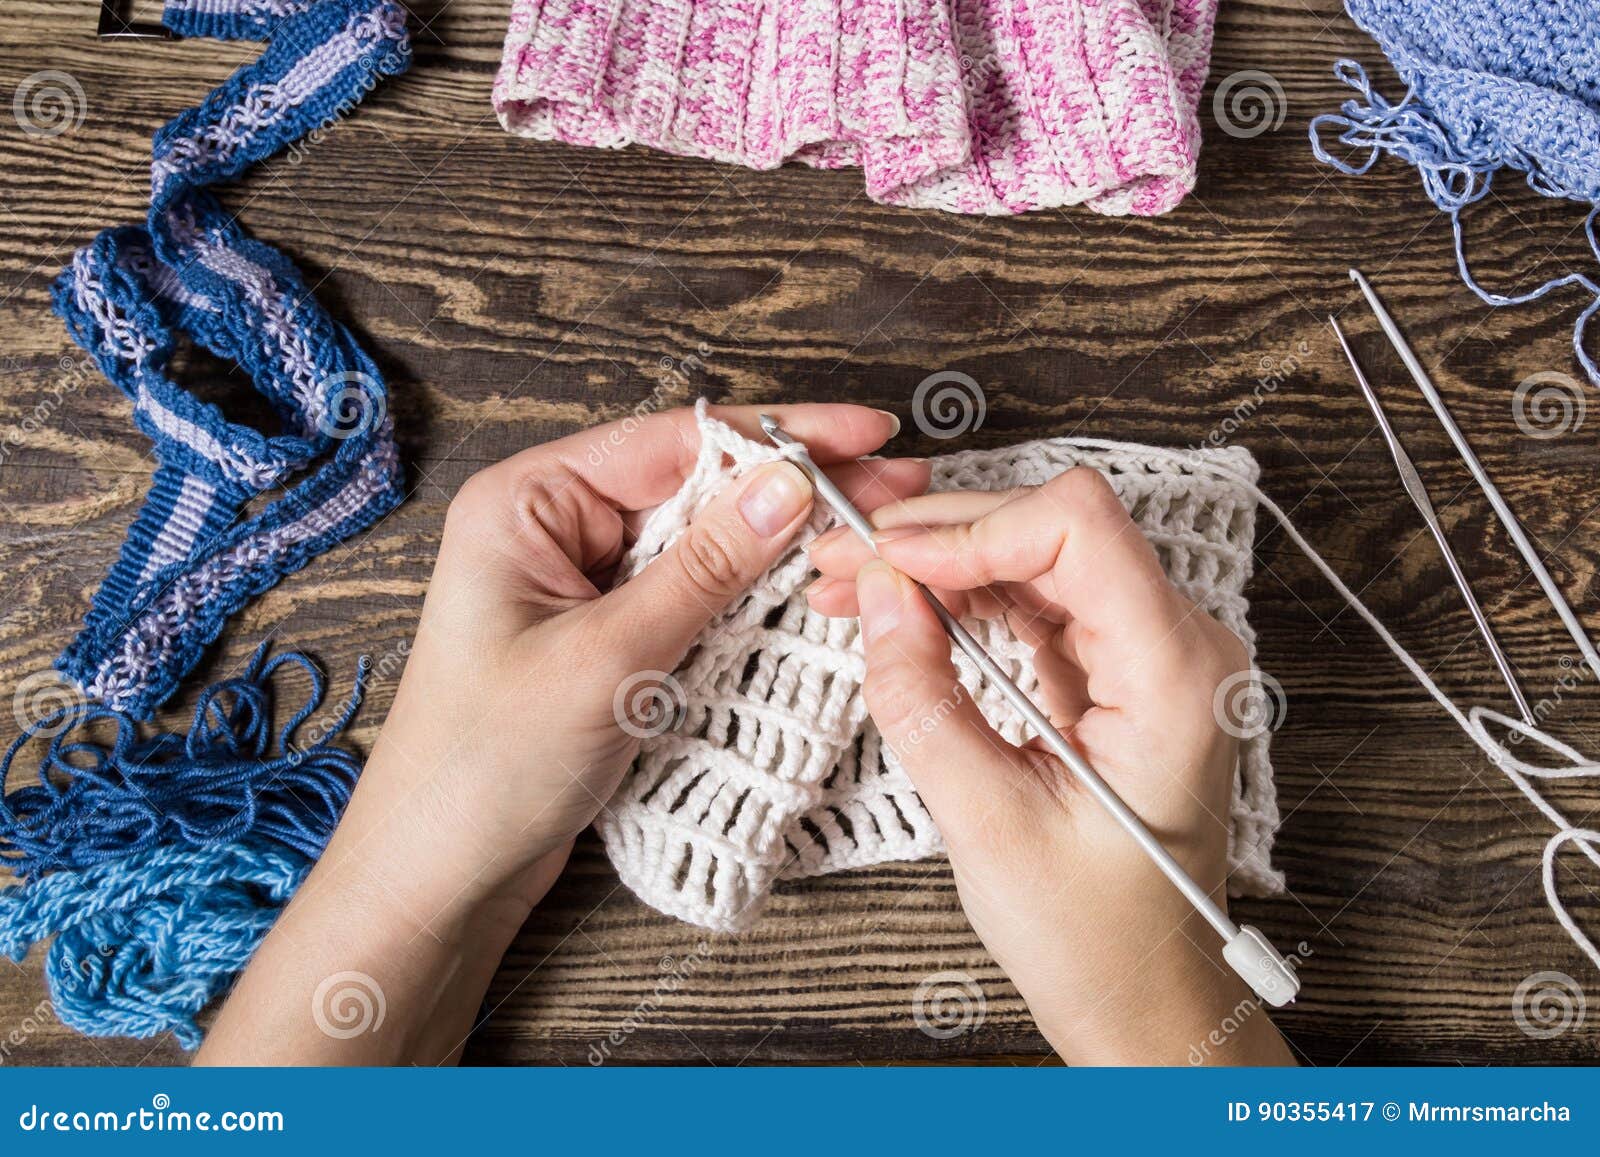 Knitting hands. Руки спицы пряжа. Handmade вязание крючком. Вязальные спицы в руках. Вязание крючком руки.